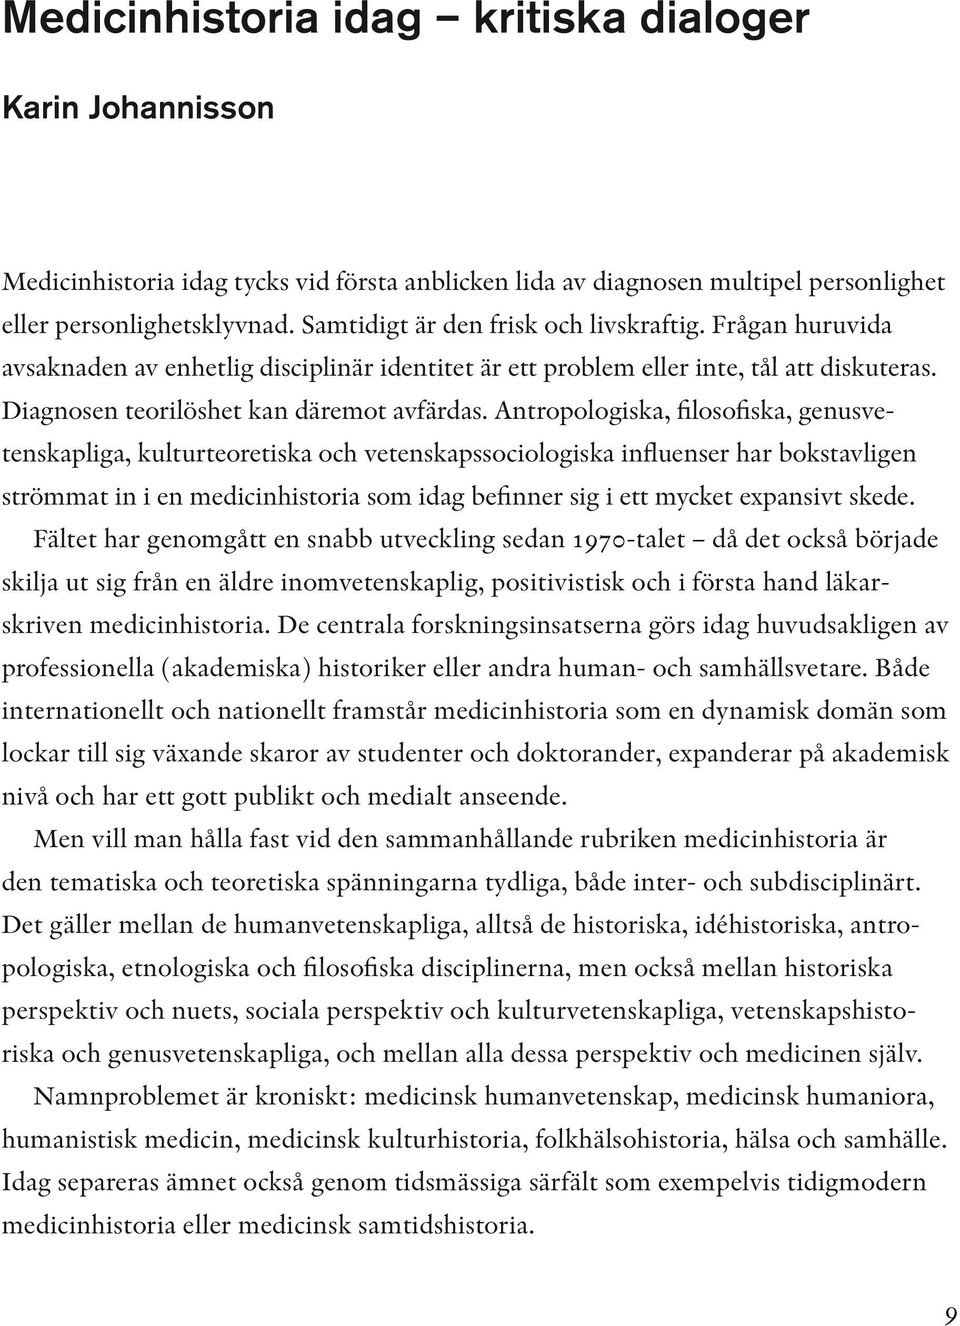 Nobel Museum Occasional Papers nr 4 Stockholm Medicinhistoria idag.  Perspektiv på det samtida svenska forskningsfältet - PDF Free Download